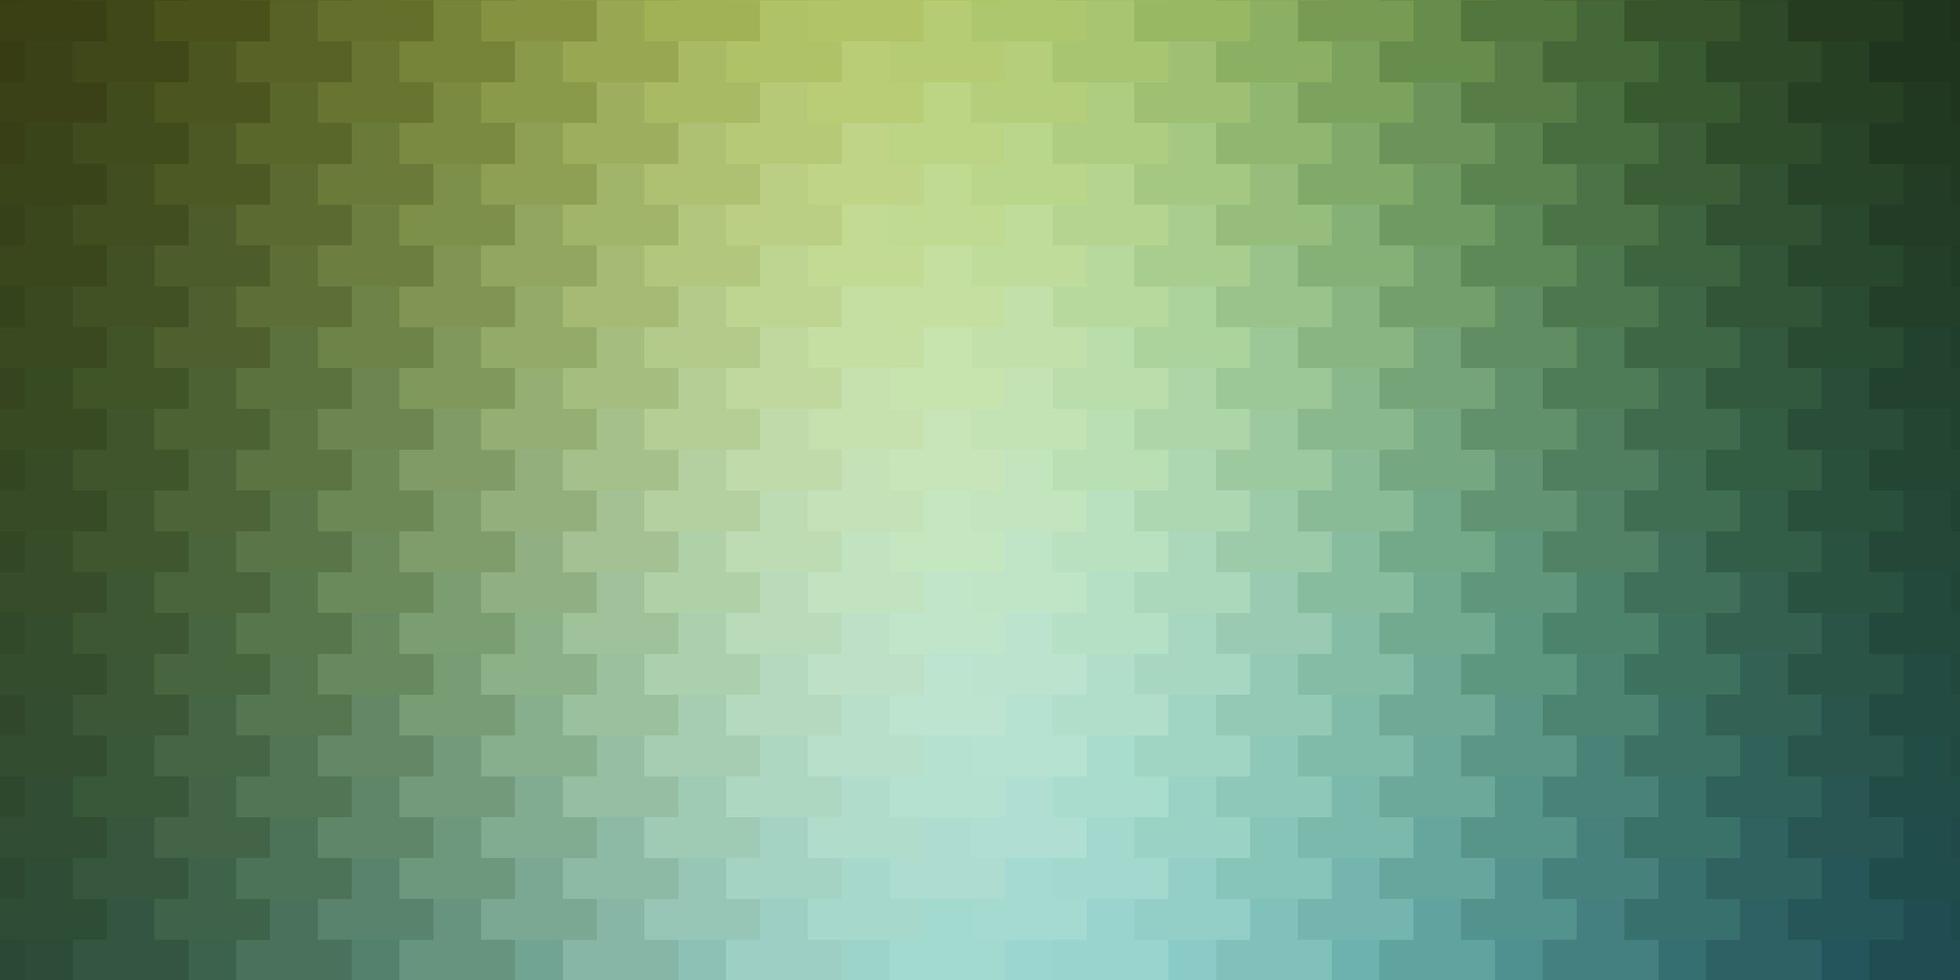 lichtblauw, groen vector sjabloon met rechthoeken.